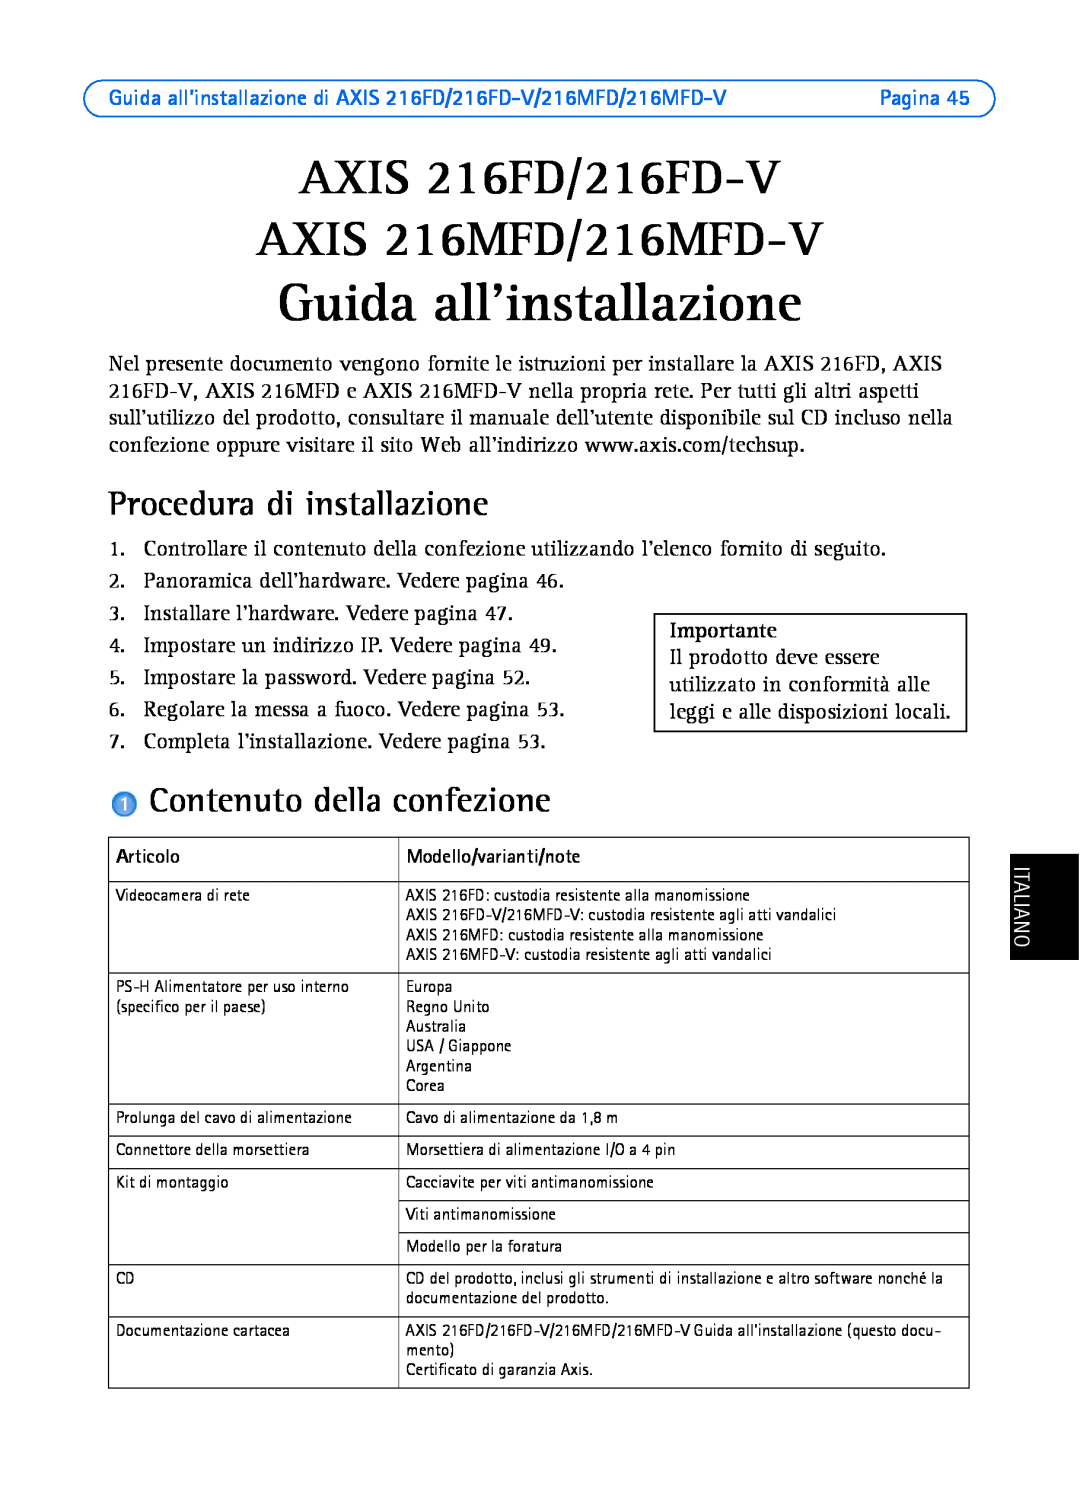 Axis Communications Guida allinstallazione, AXIS 216FD/216FD-V AXIS 216MFD/216MFD-V, Procedura di installazione, Pagina 